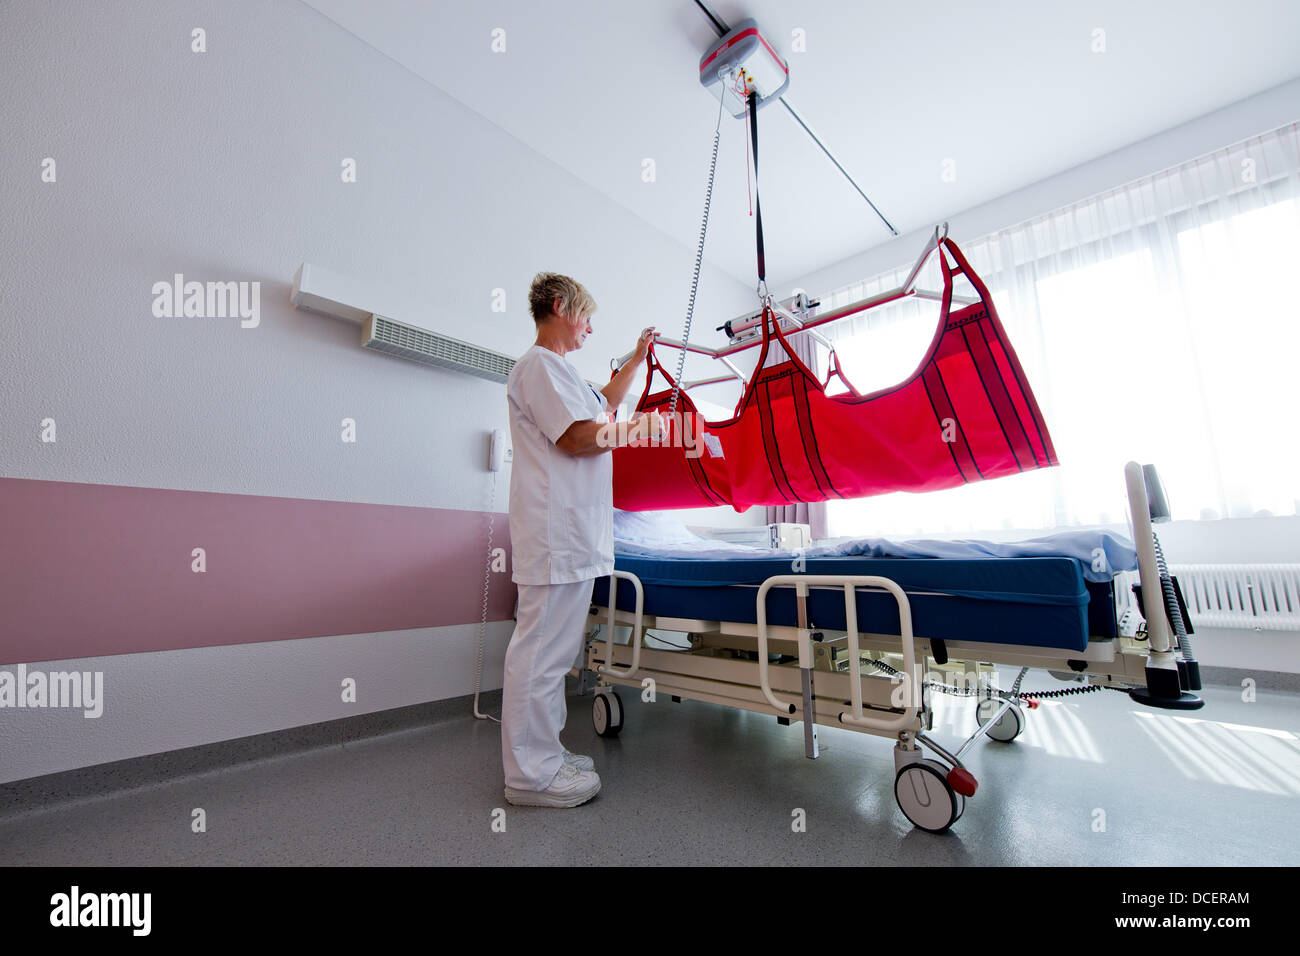 Enfermera Heike Wollenhaupt demuestra una cama especial para personas obesas  en el Hospital Evangélico en Witten, Alemania, 09 de agosto de 2013.  Extremadamente gorda la gente necesita una cama extremadamente estables y